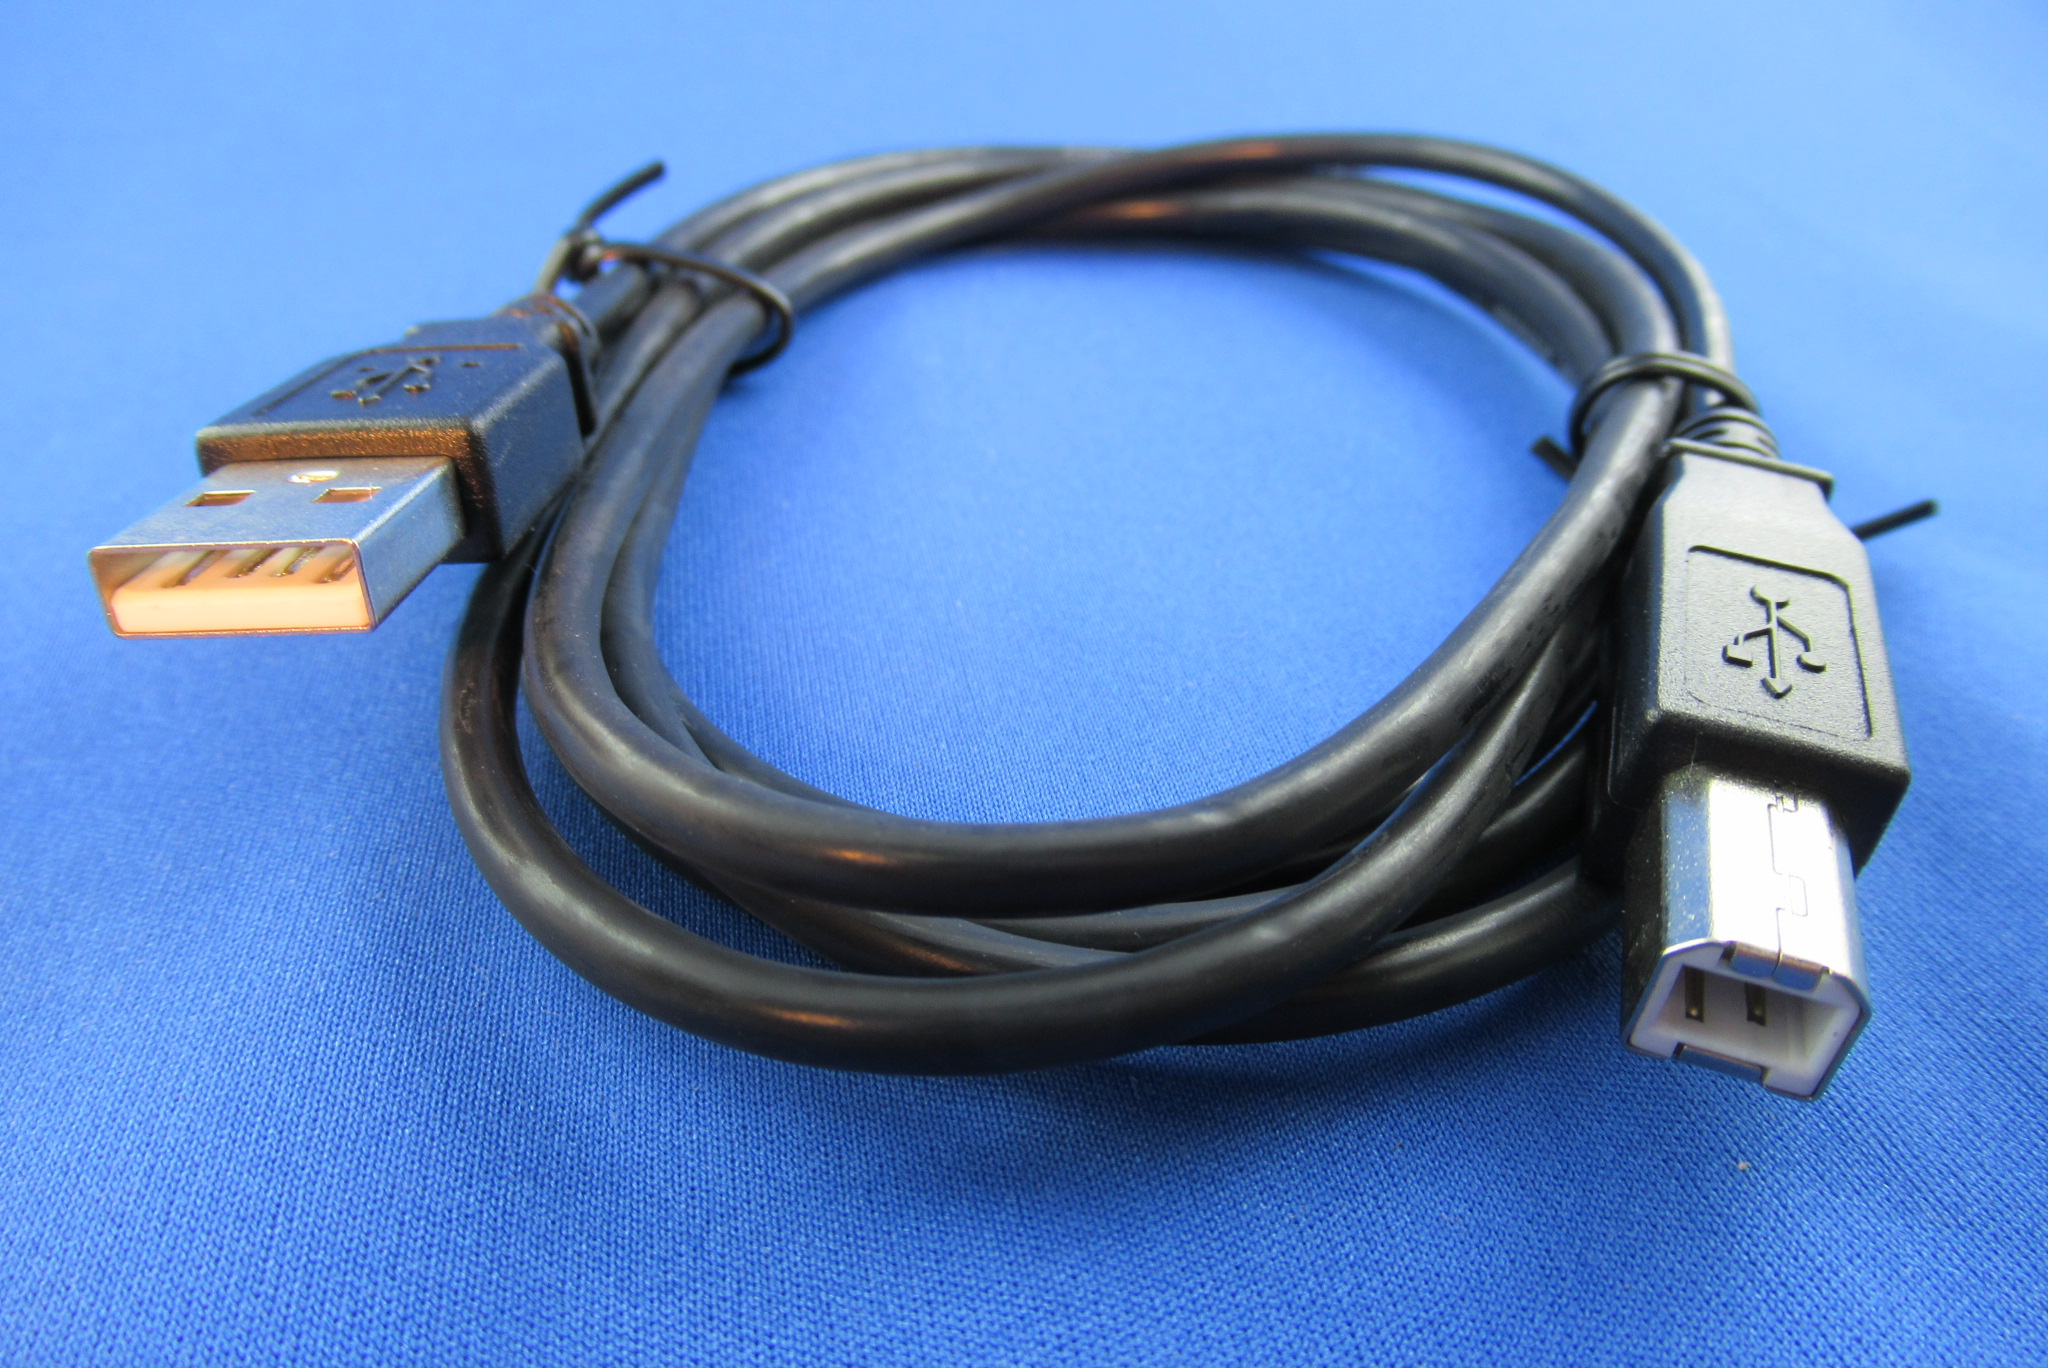 USB 2.0 Anschlusskabel Stecker Typ A/Stecker Typ B 1,8m schwarz